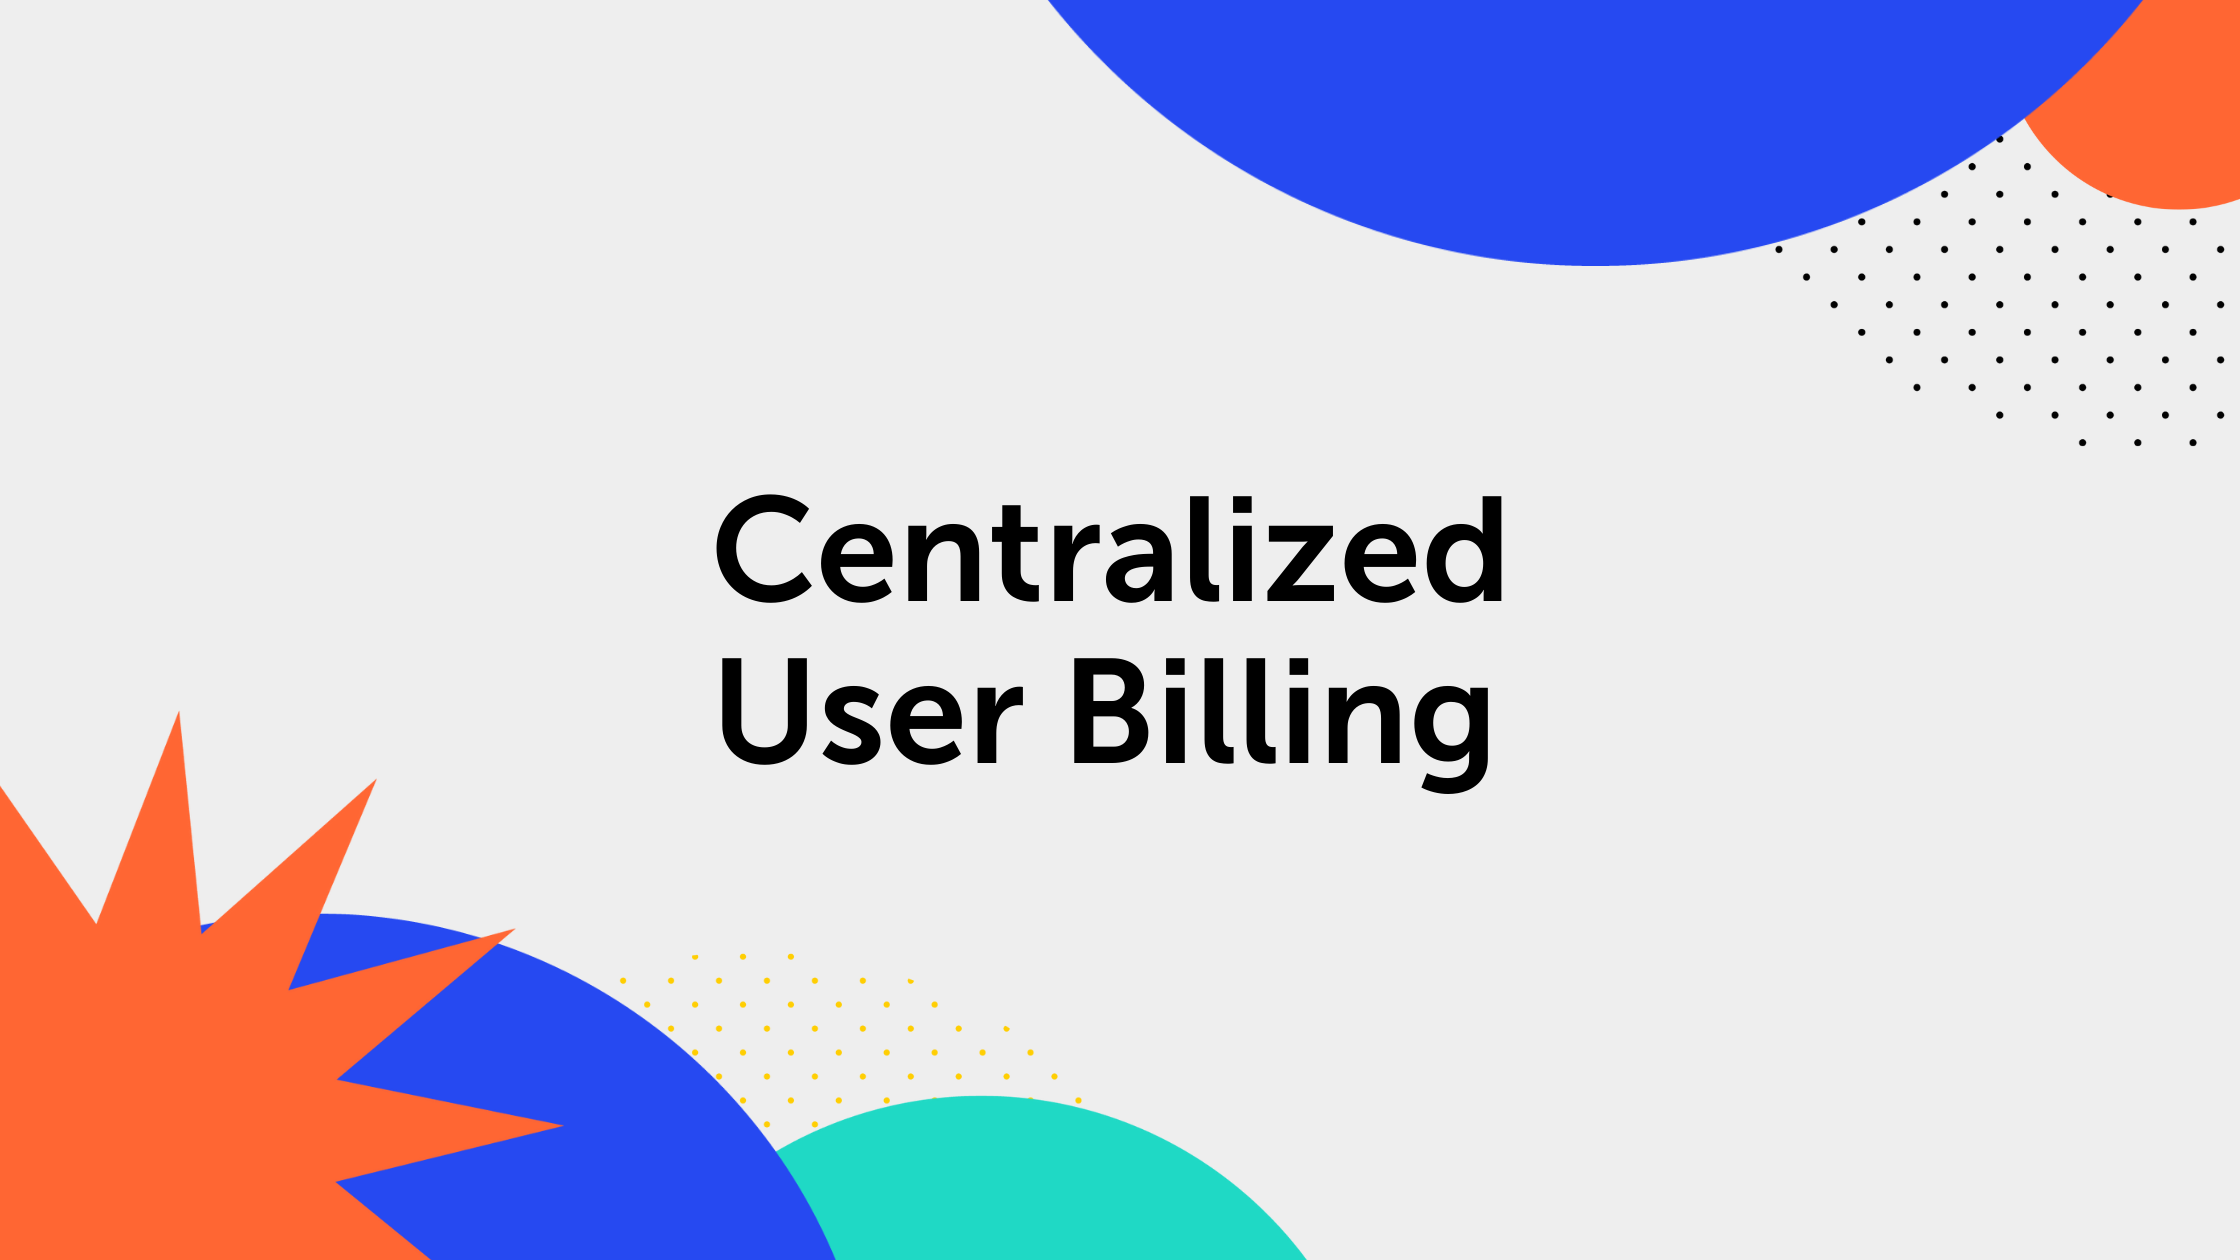 Centralized User Billing in the Atlassian Cloud